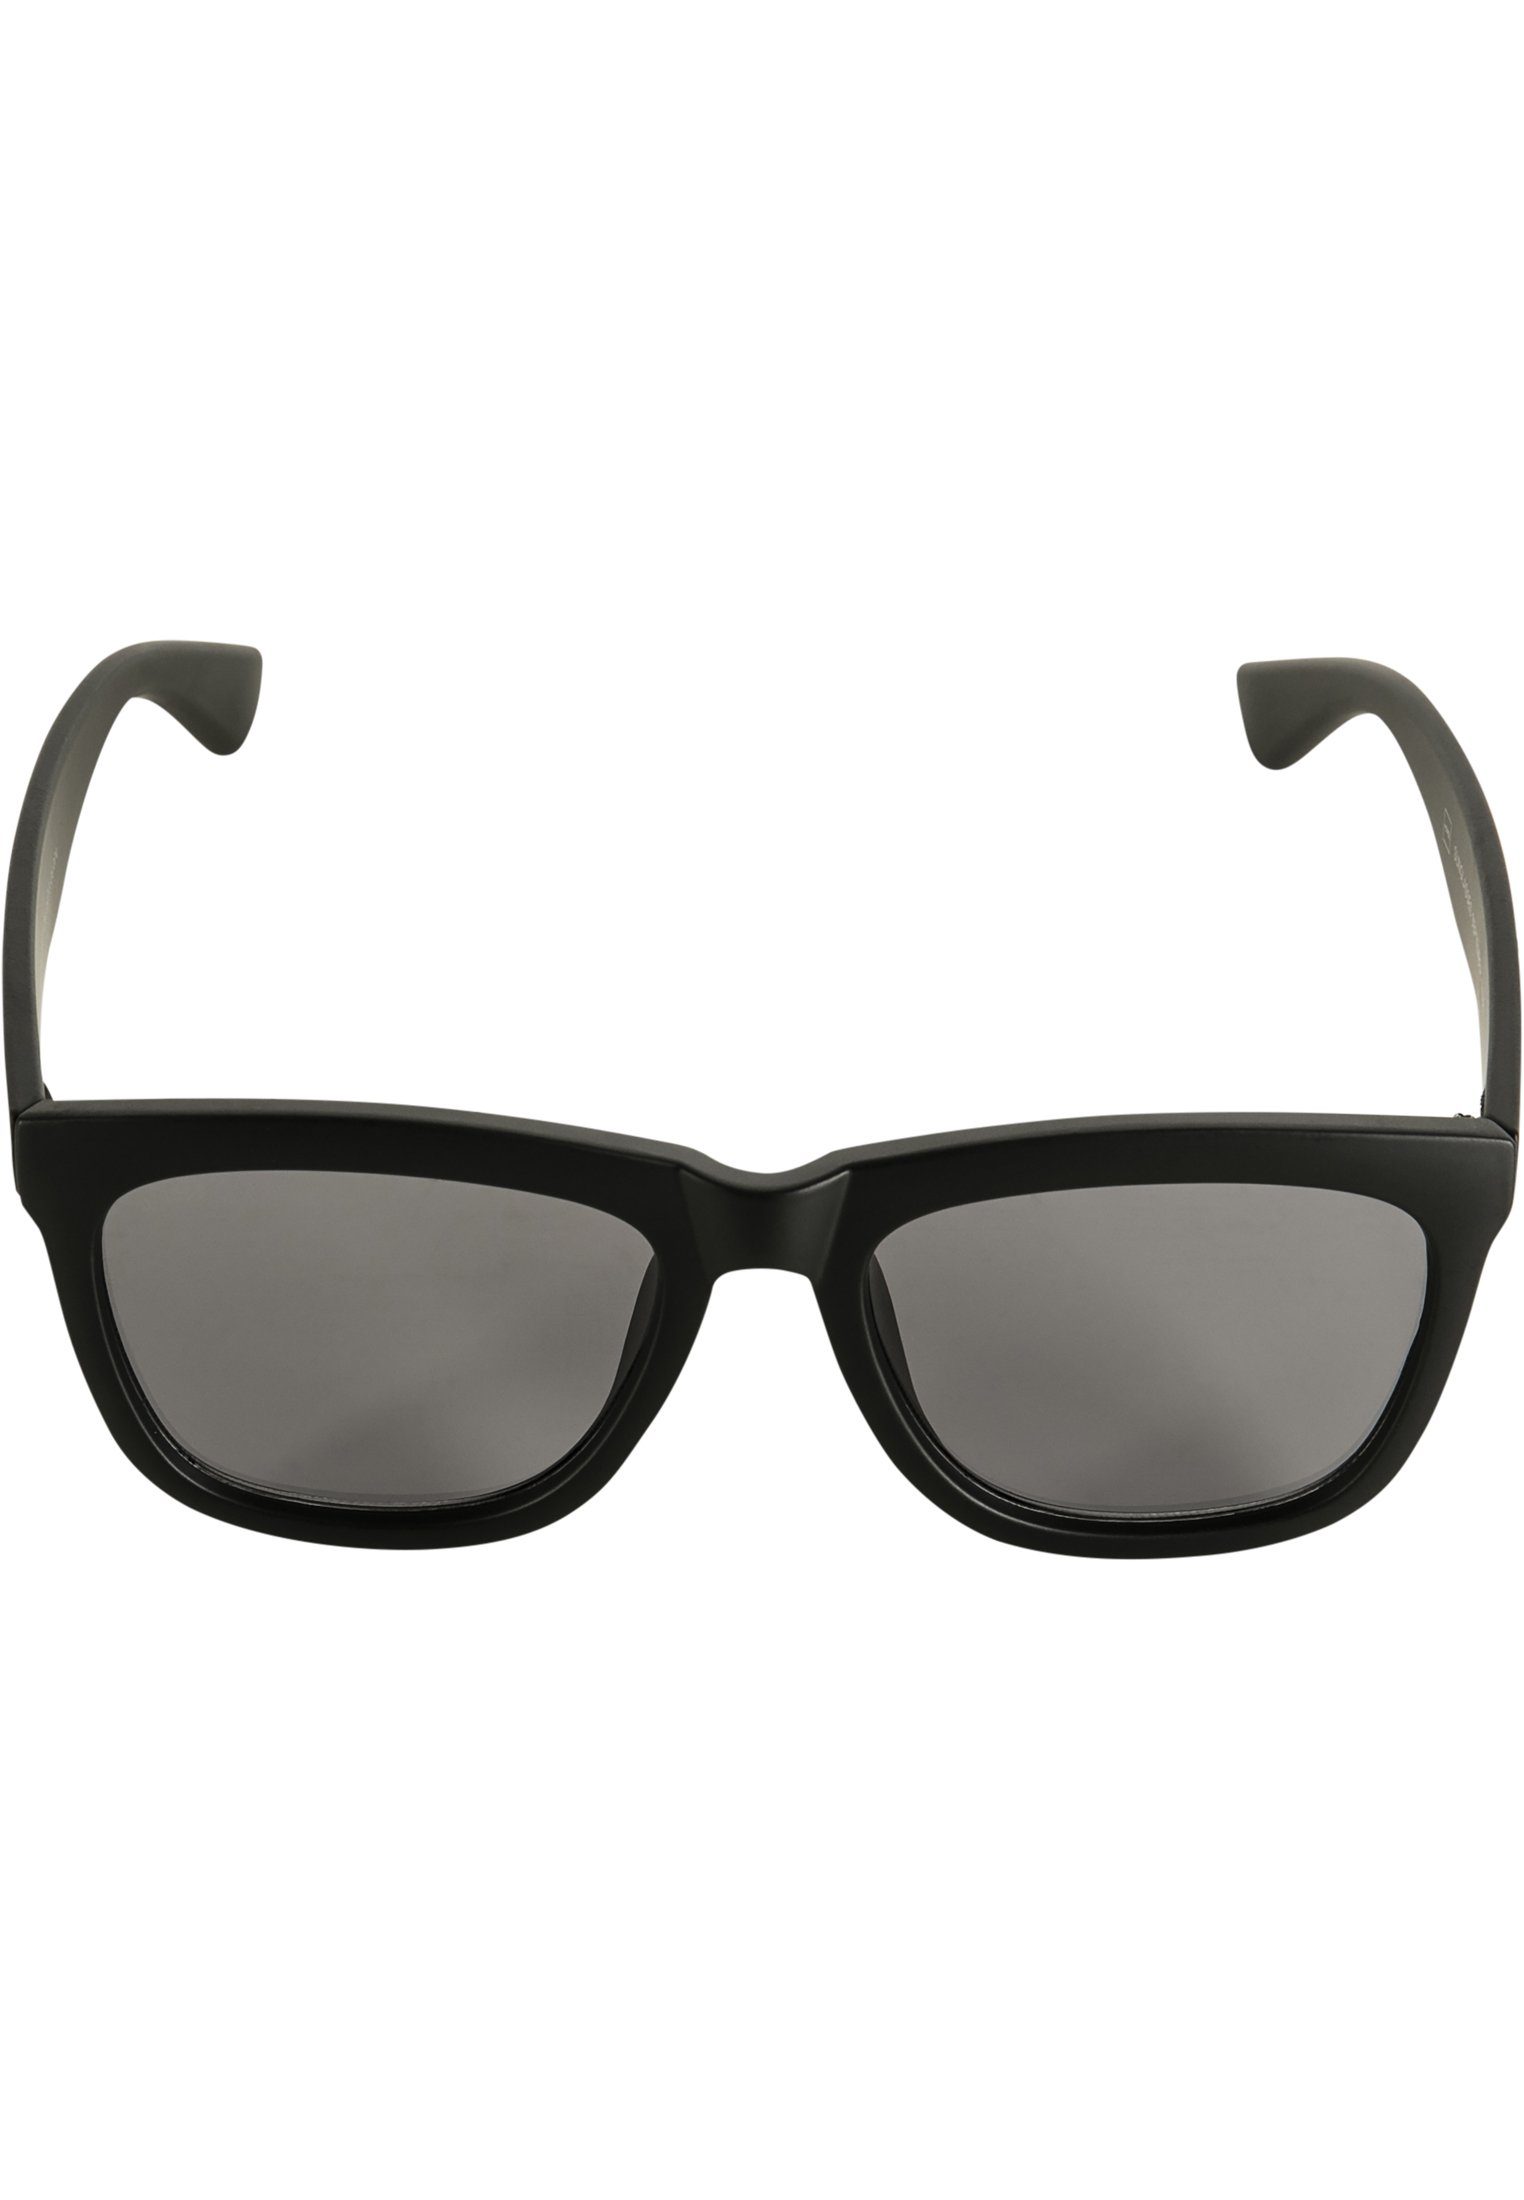 Sunglasses Accessoires, MSTRDS Sonnenbrille Brillen, Mstrds, Sale!, Brillen September, Accessoires